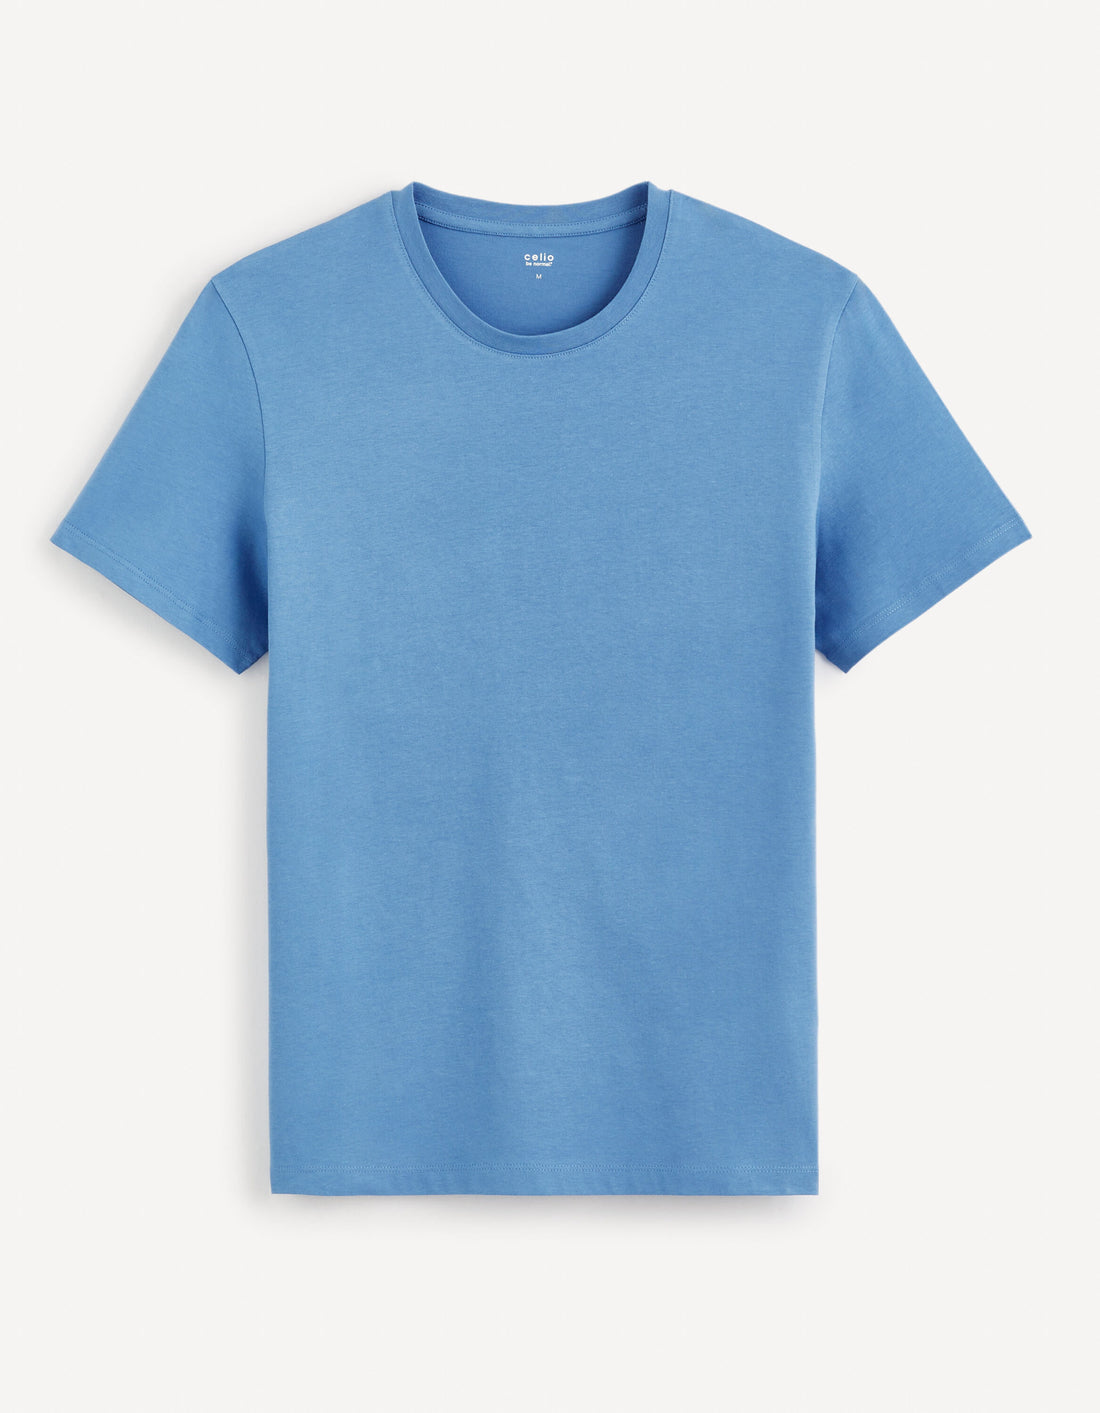 Plain Round Neck Cotton T-Shirt_TEBASE_BLEU CIEL_01